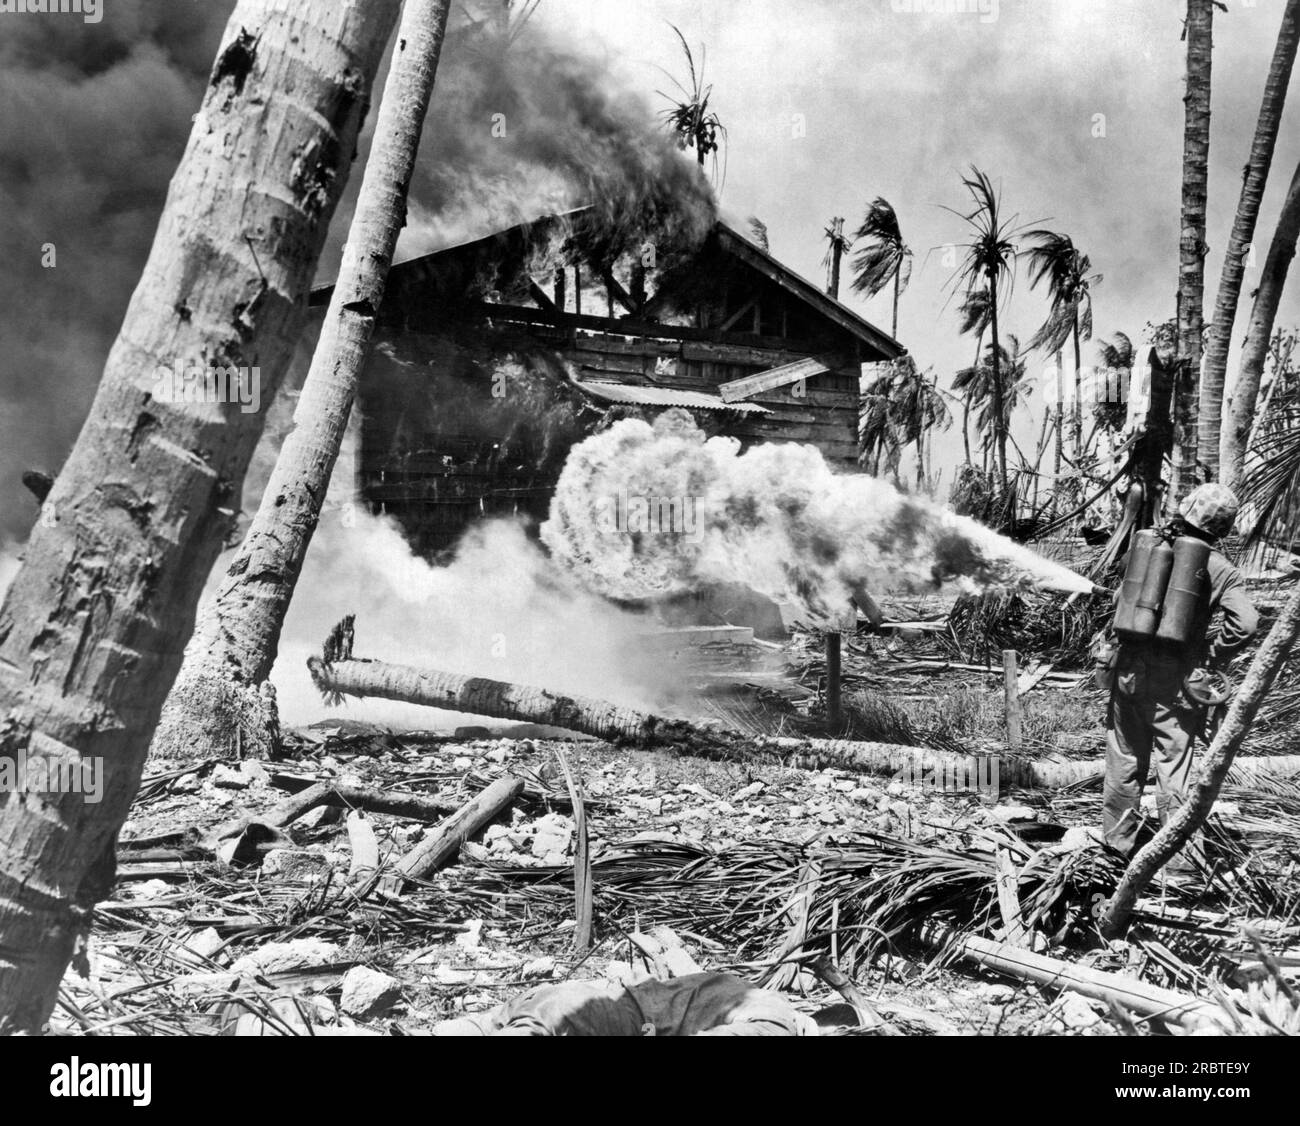 Kwajalein-Atoll, Marshallinseln: 8. August 1945 Ein Marine setzt während der Invasion der Kwajalein-Inseln einen Flammenwerfer gegen japanische Truppen ein. Stockfoto